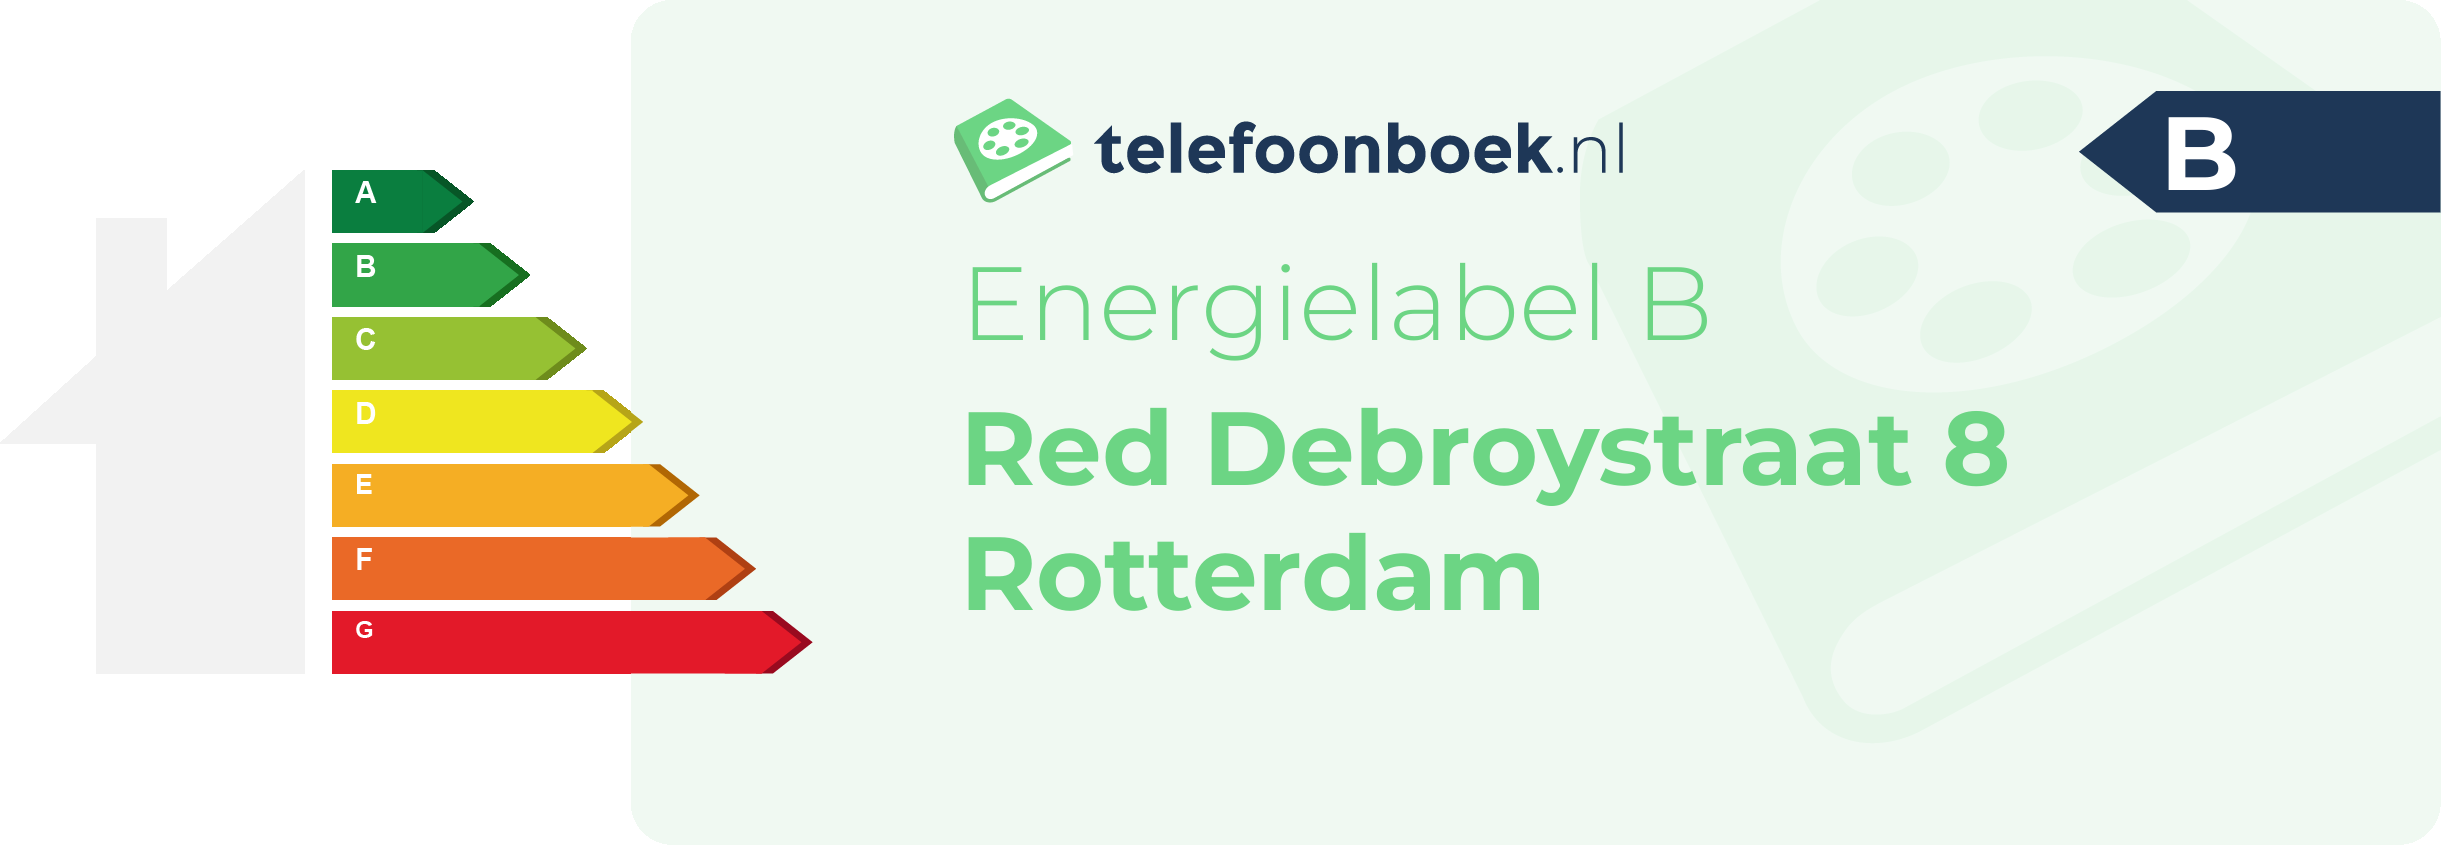 Energielabel Red Debroystraat 8 Rotterdam